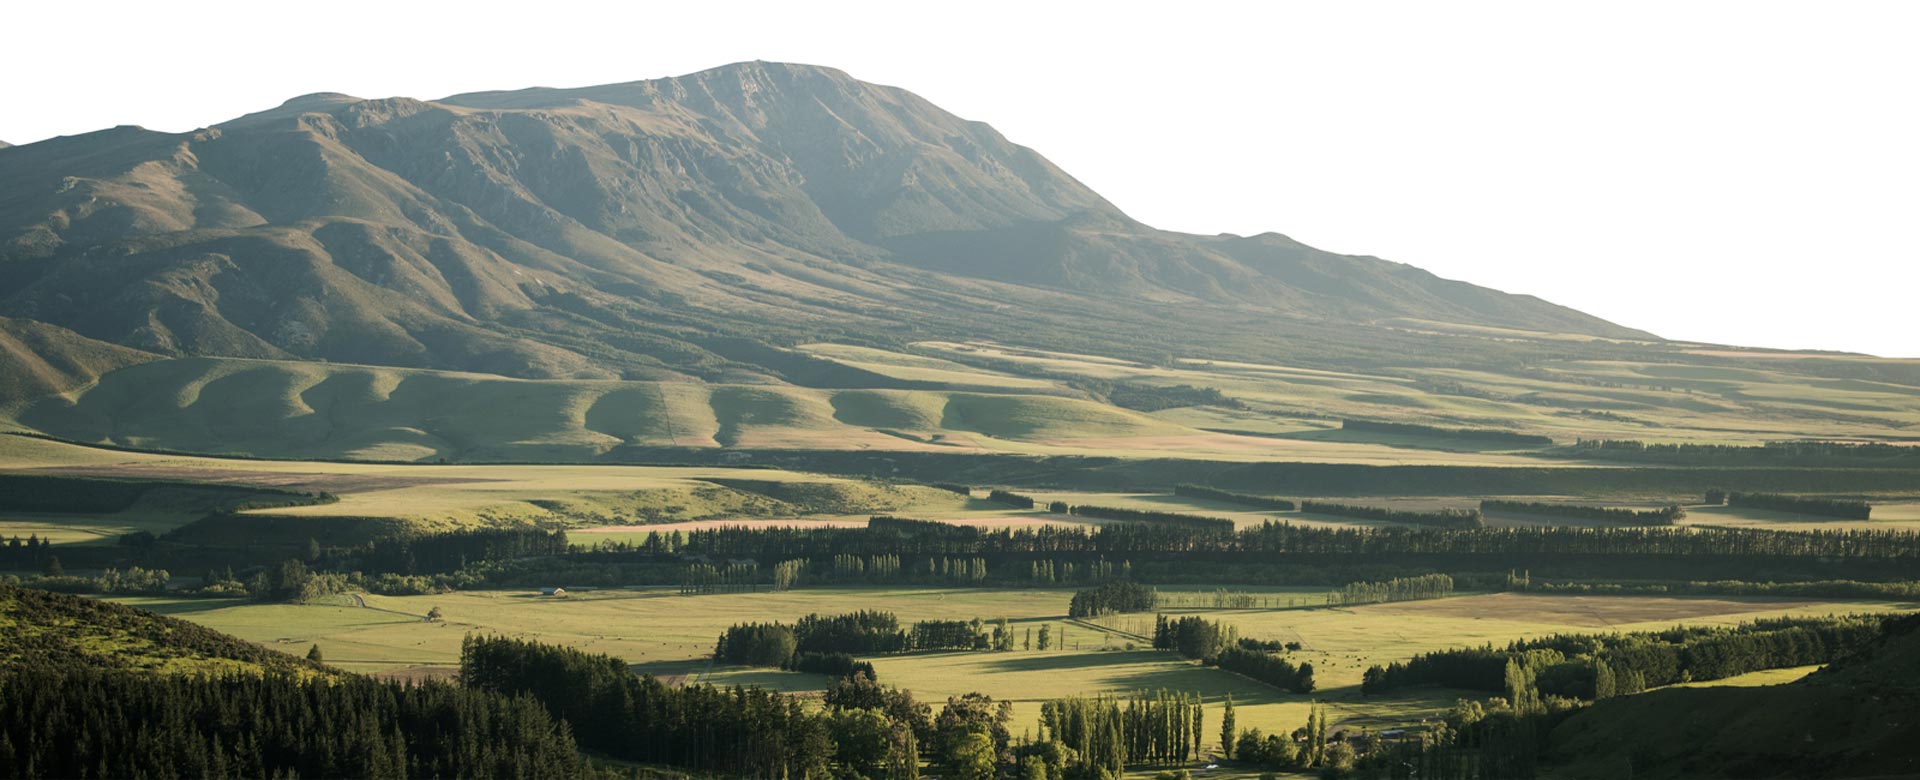 hilly NZ landscape